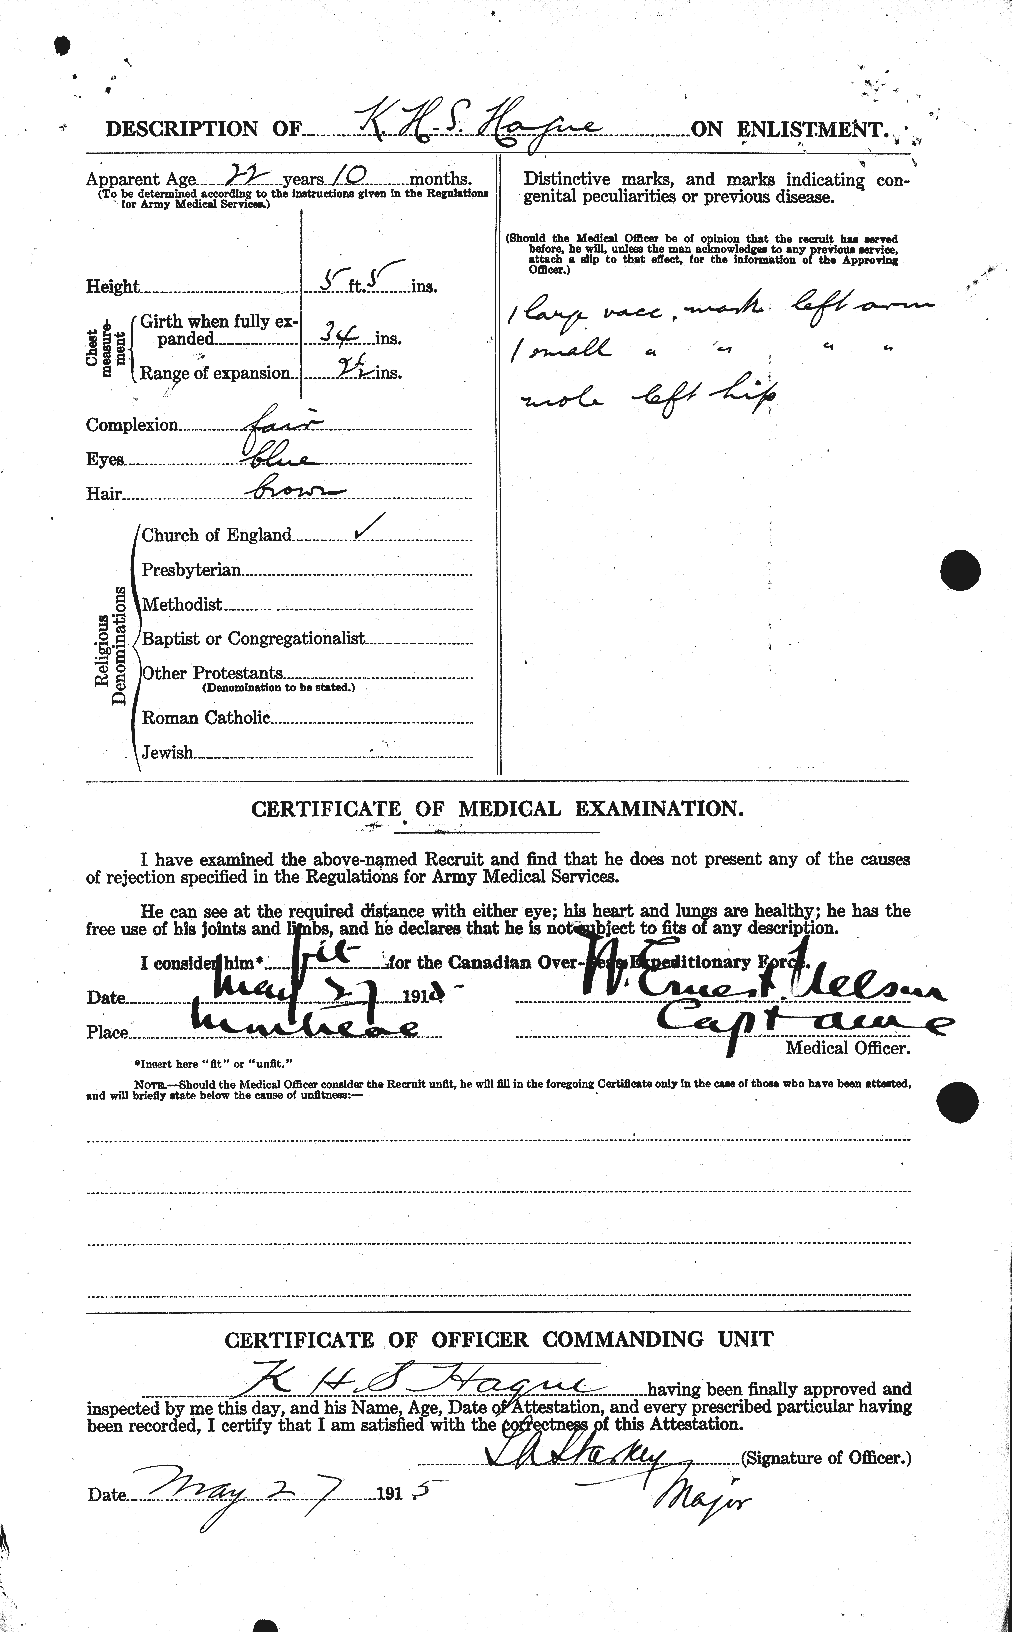 Dossiers du Personnel de la Première Guerre mondiale - CEC 368911b